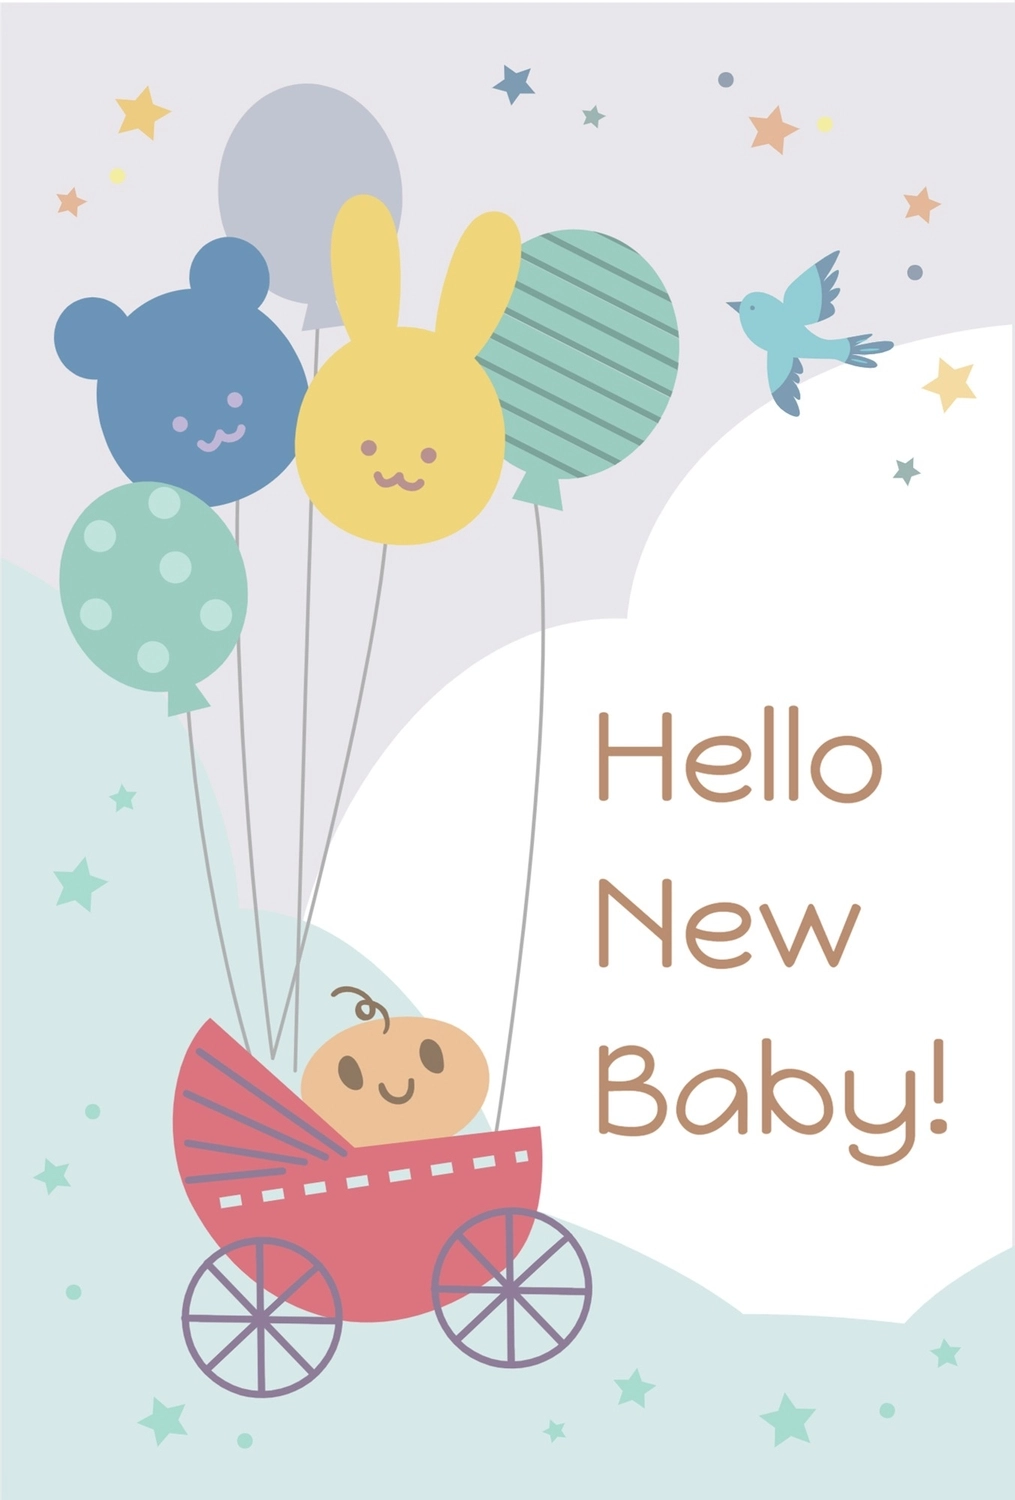 赤ちゃんイラストの出産報告, Private celebration card, colorful, template, message card template